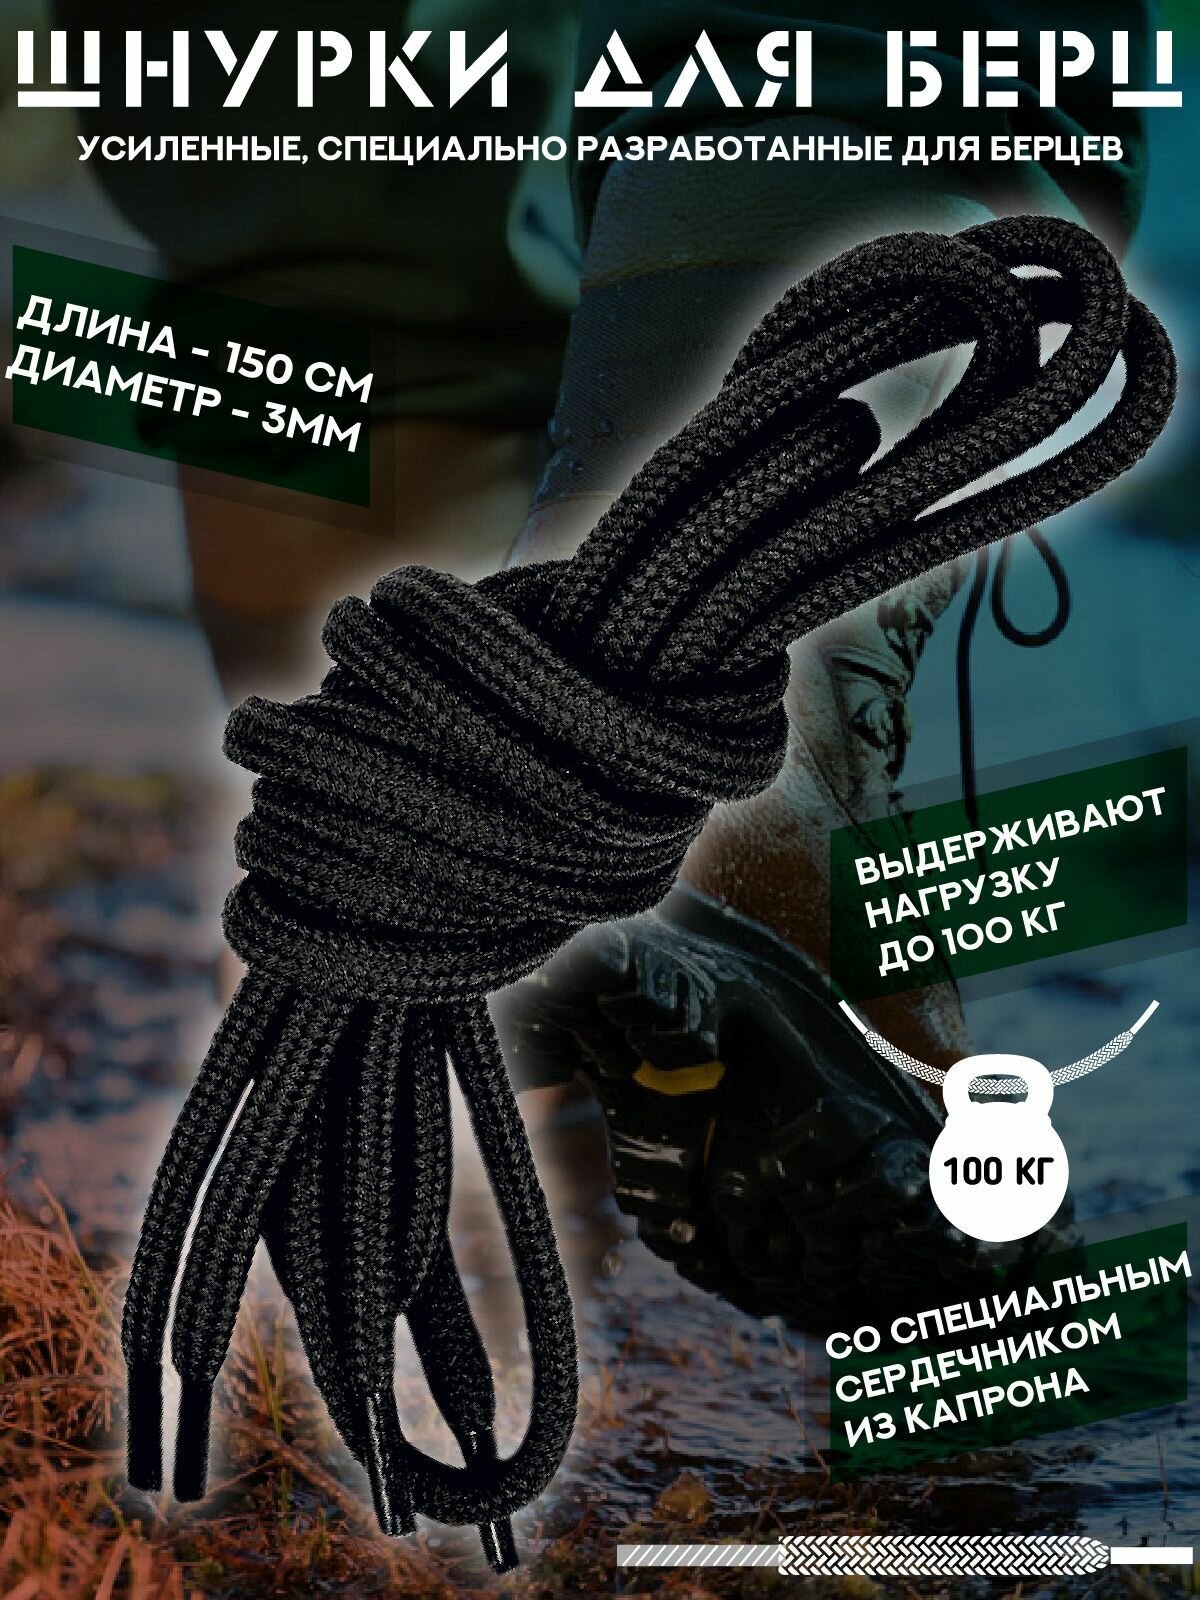 Шнурки для берцев специальные усиленные с капроновым сердечником. Черные. Длина 150 сантиметров. 1 пара.